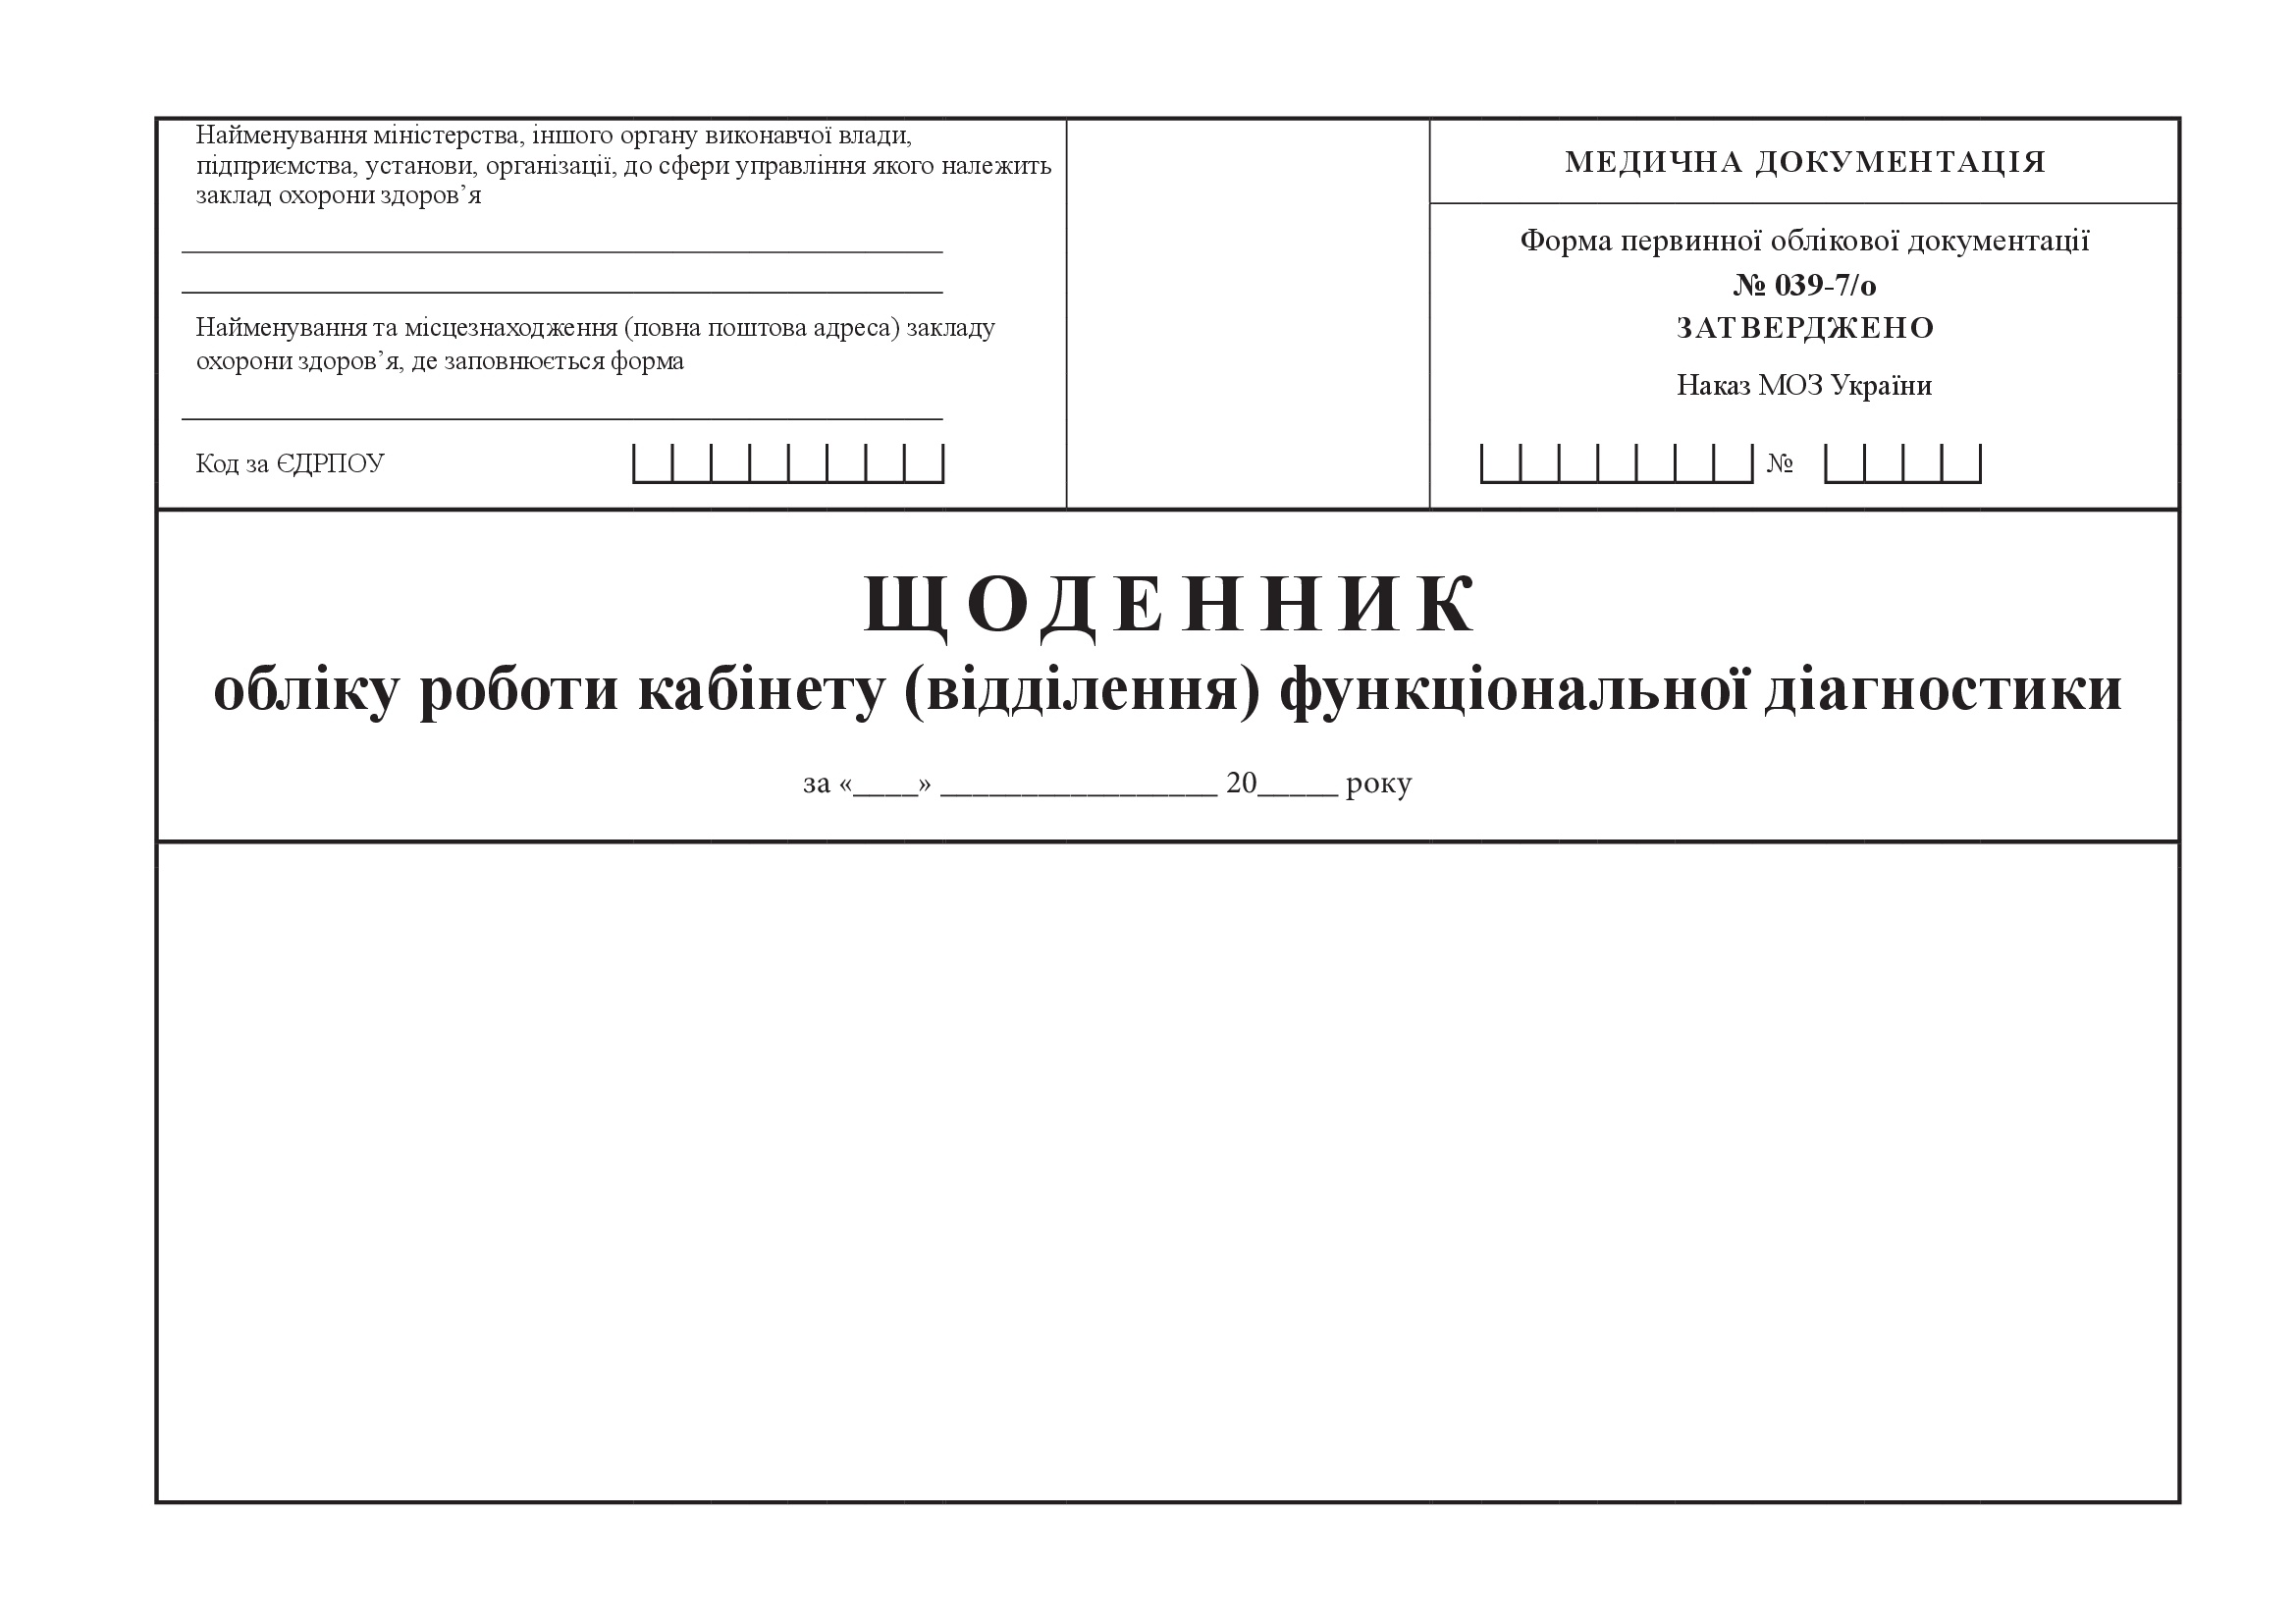 Щоденник обліку роботи кабінету (відділення) функціональної діагностики, форма 039-7/о. Автор — Міністерство охорони здоров'я України. 